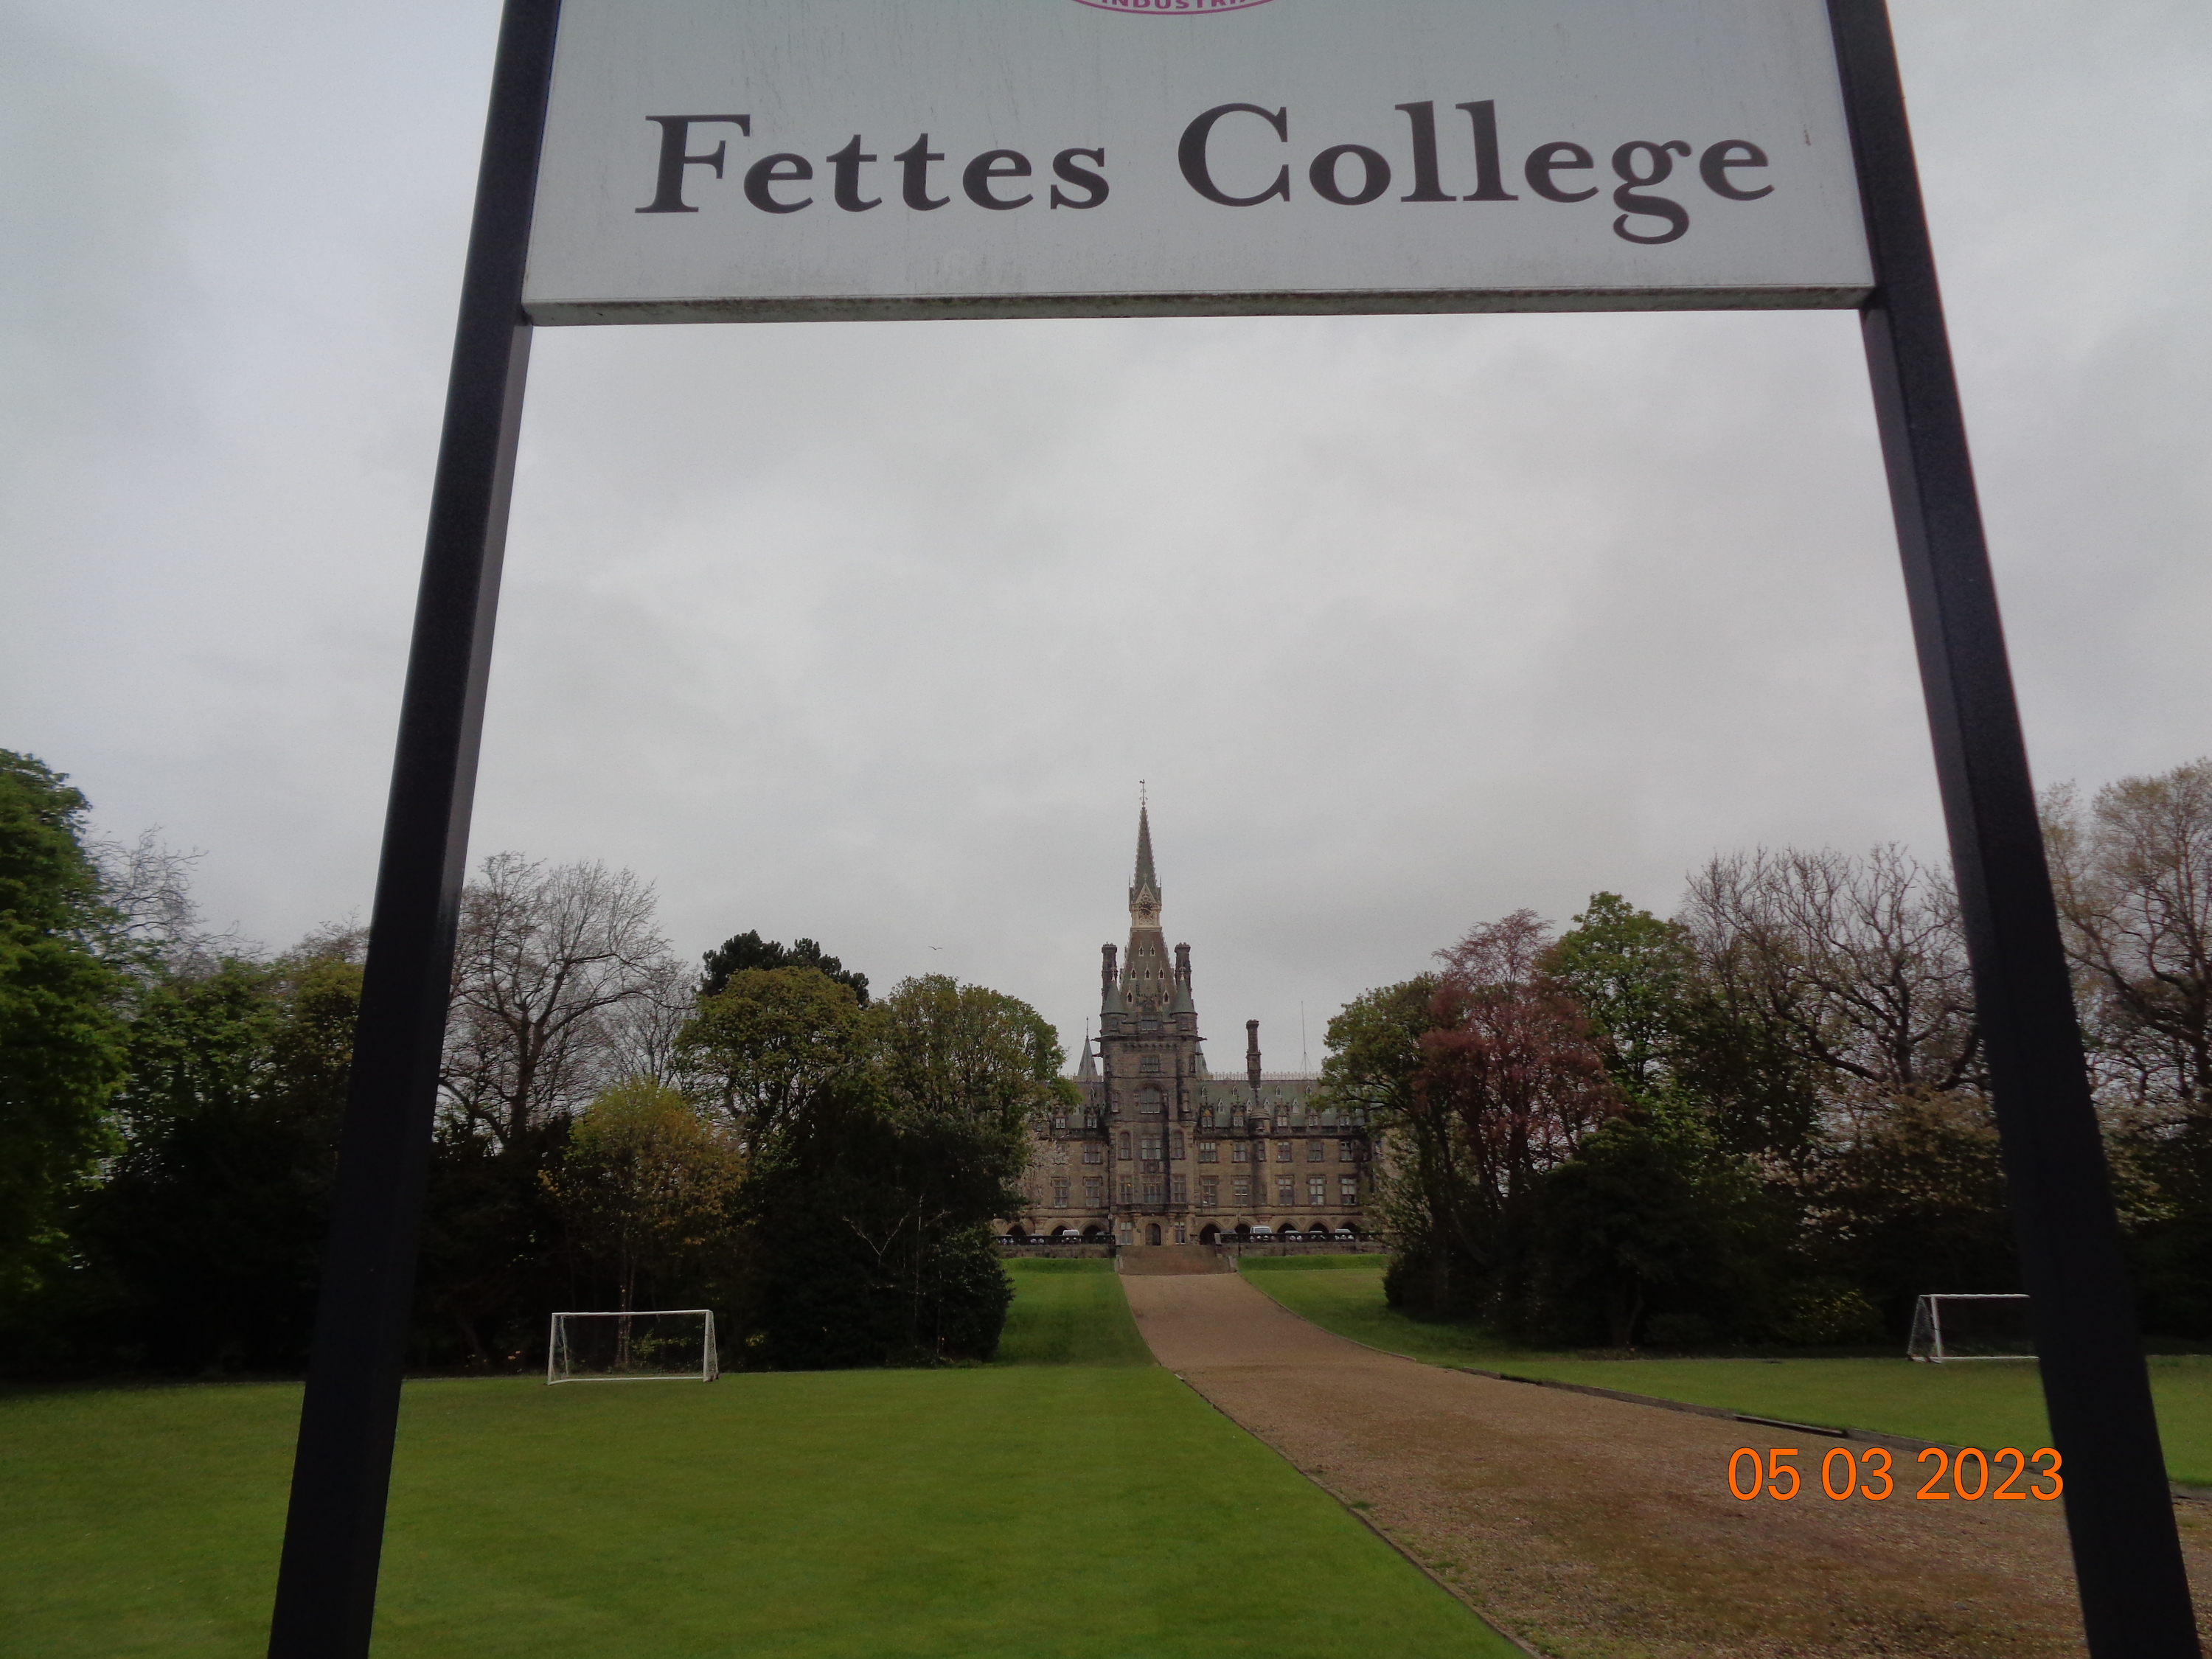 Fettes College in Edinburgh